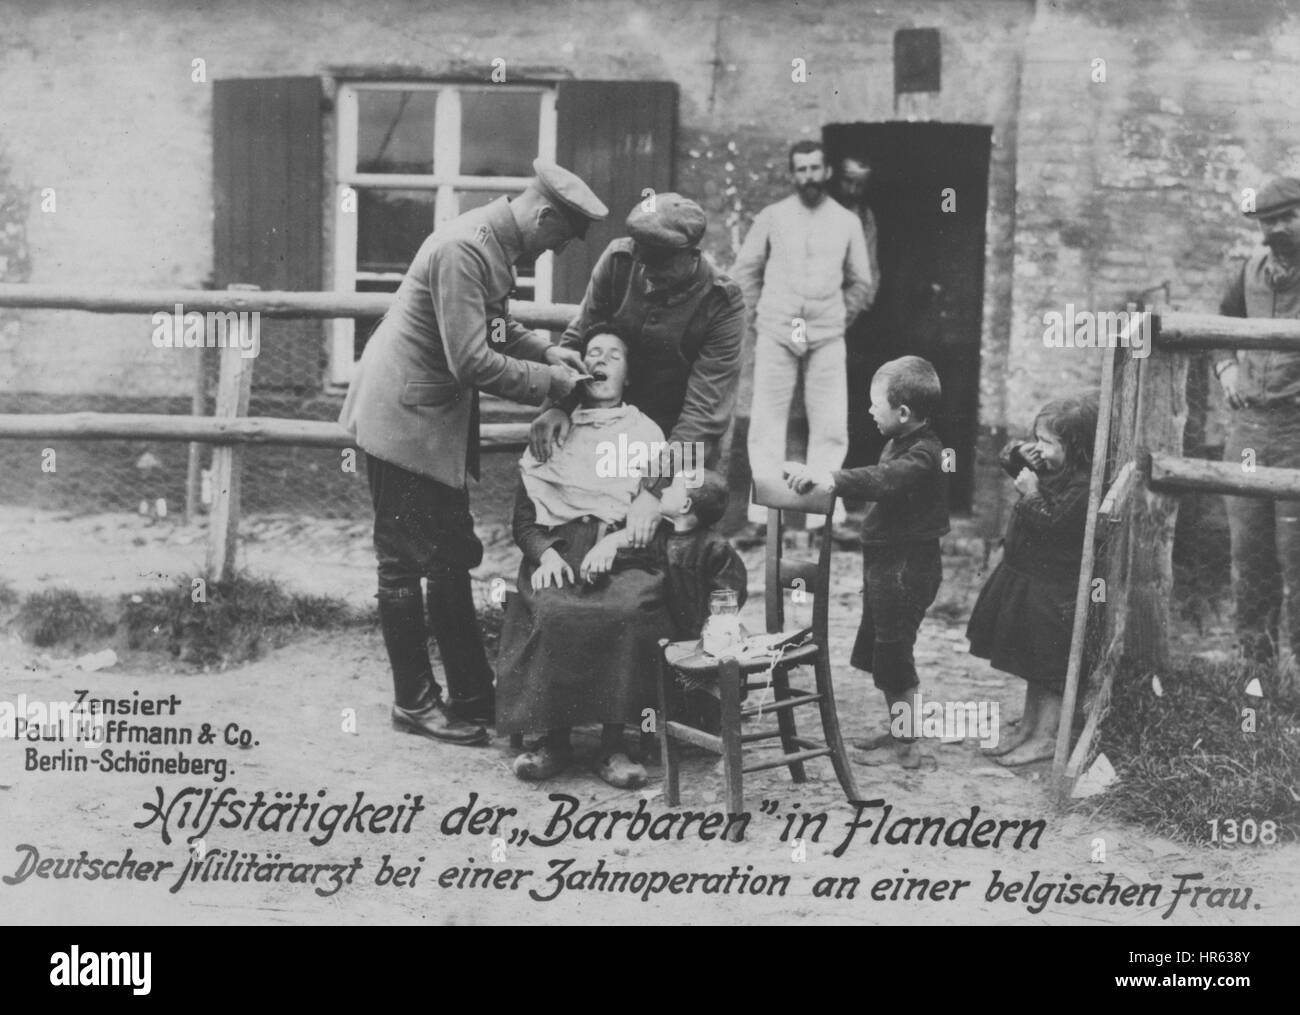 Deutschen Militärarzt zahnärztliche Tätigkeit auf eine belgische Frau im ersten Weltkrieg, 1915. Von der New York Public Library. Stockfoto